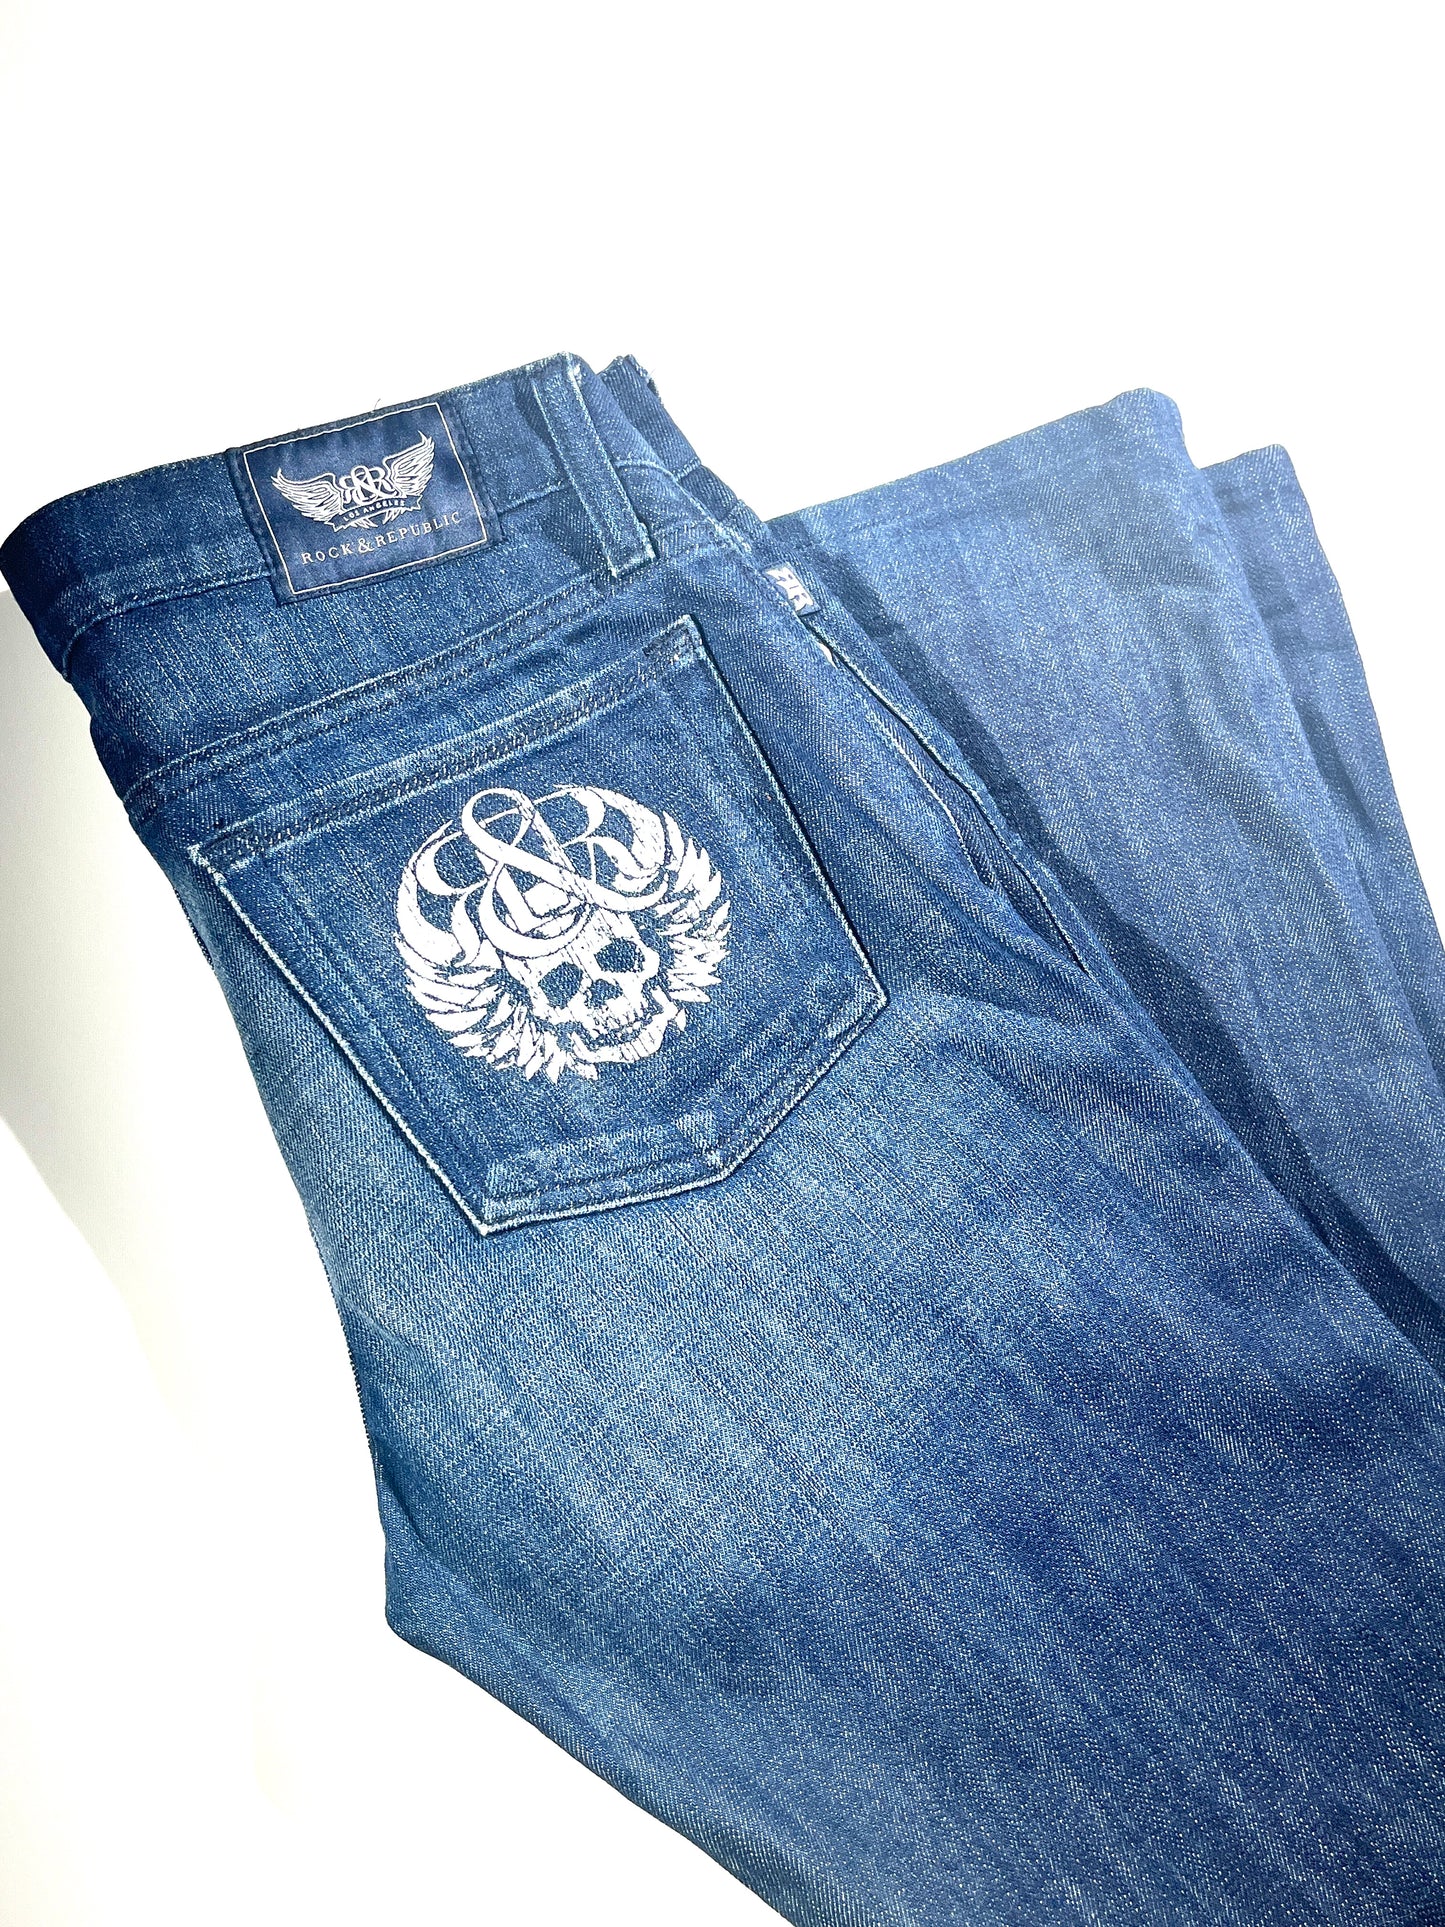 Vintage Rock & Republic Jeans Denim Bottoms